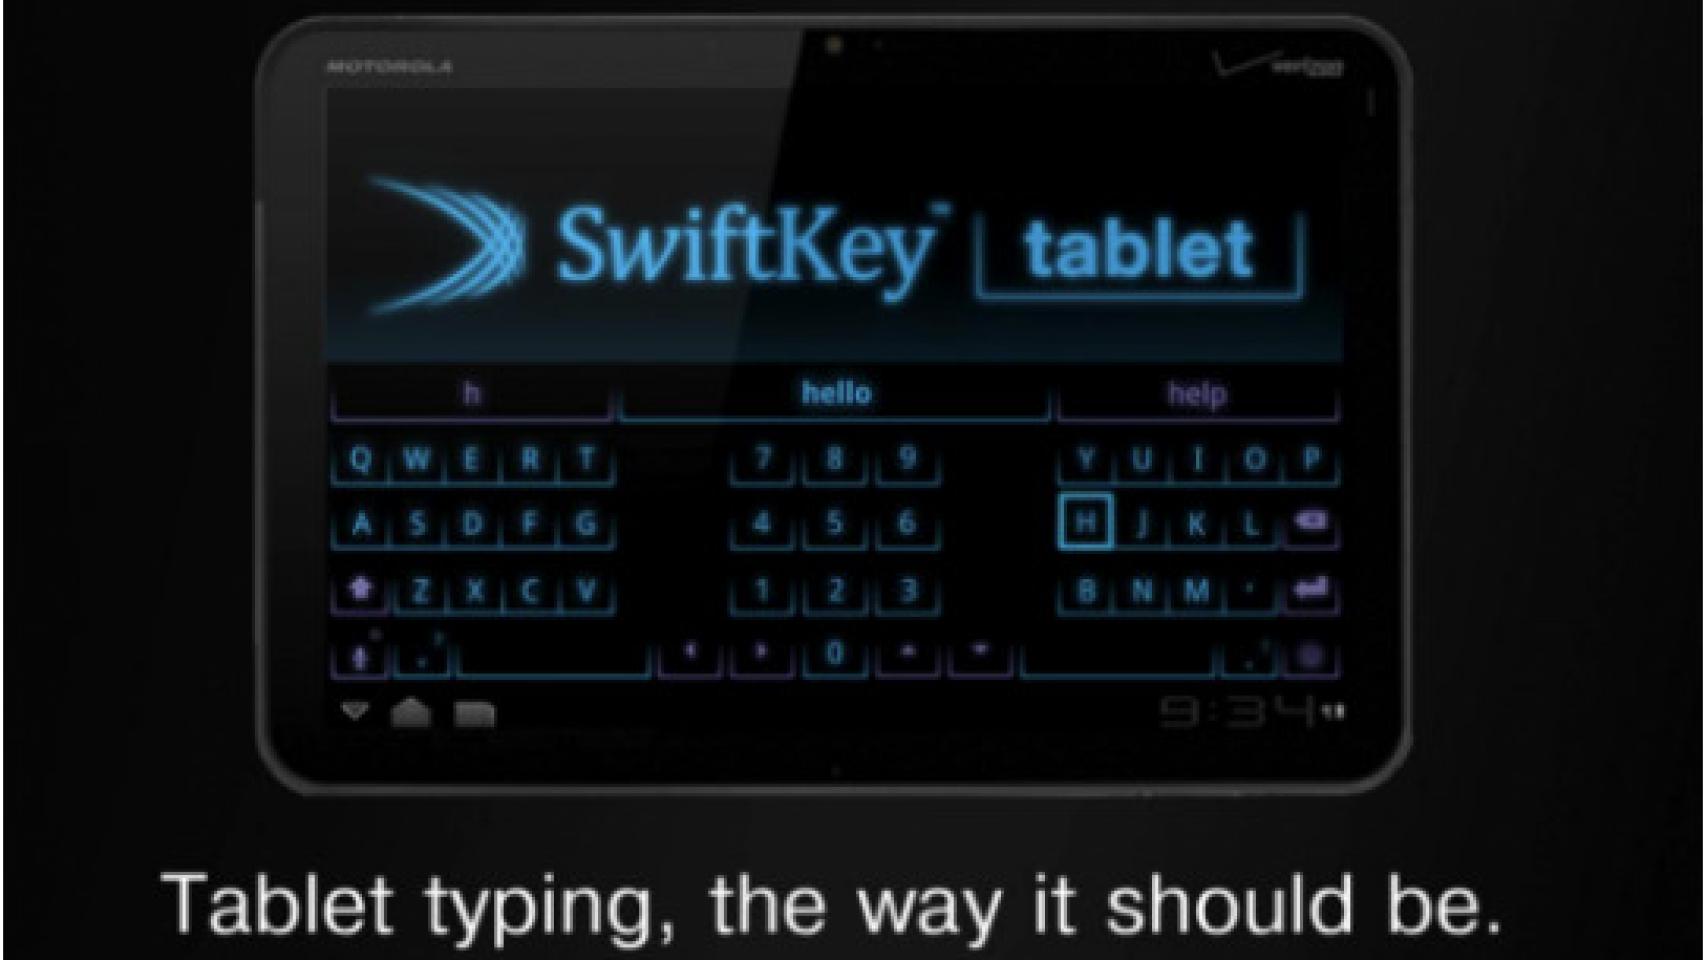 SwiftKey para Honeycomb, o cómo adaptar un teclado para tablets